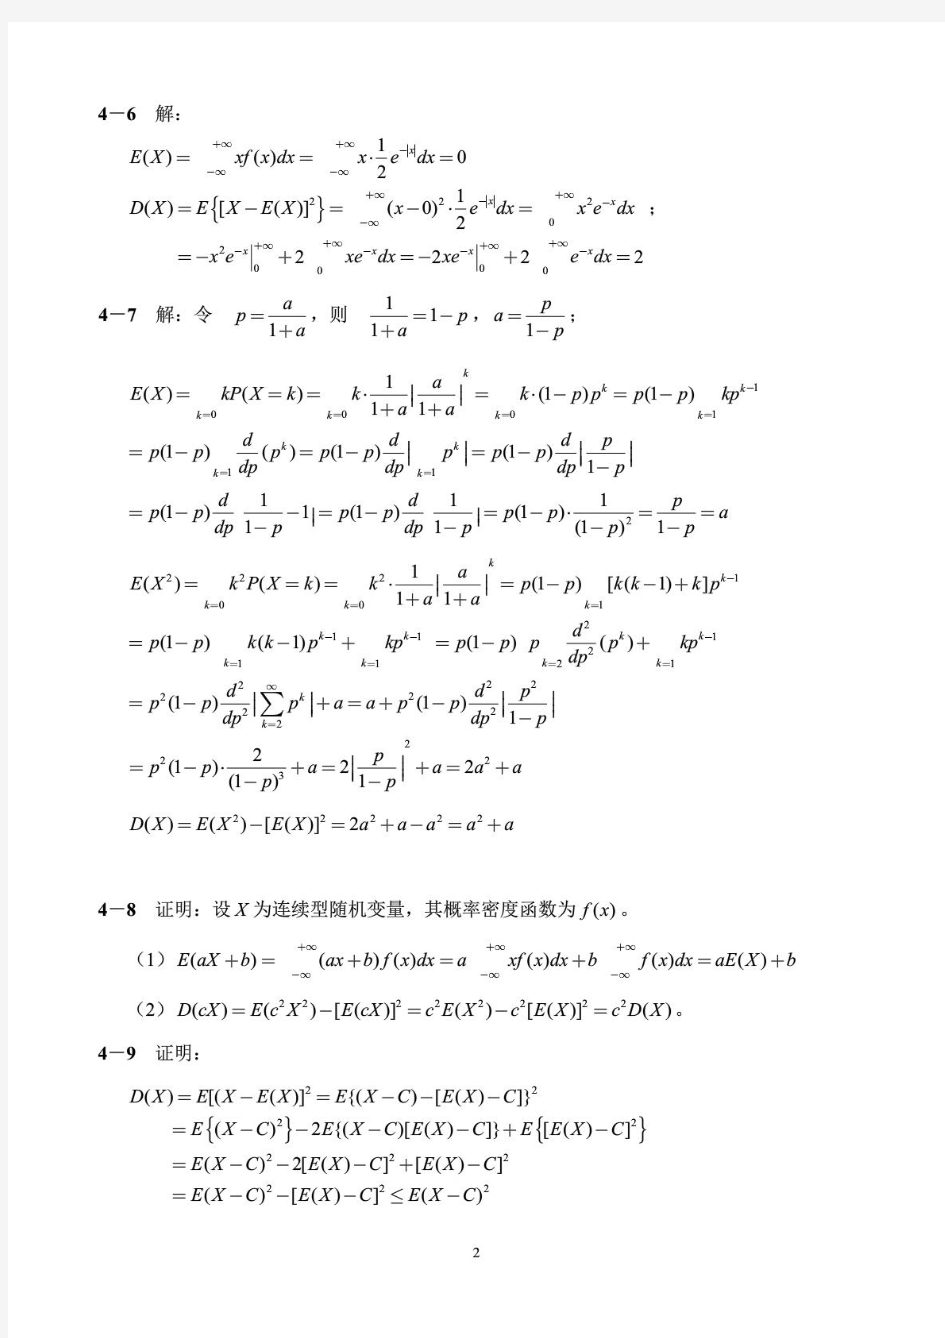 概率论与数理统计(刘建亚)习题解答第4章(无乱码))